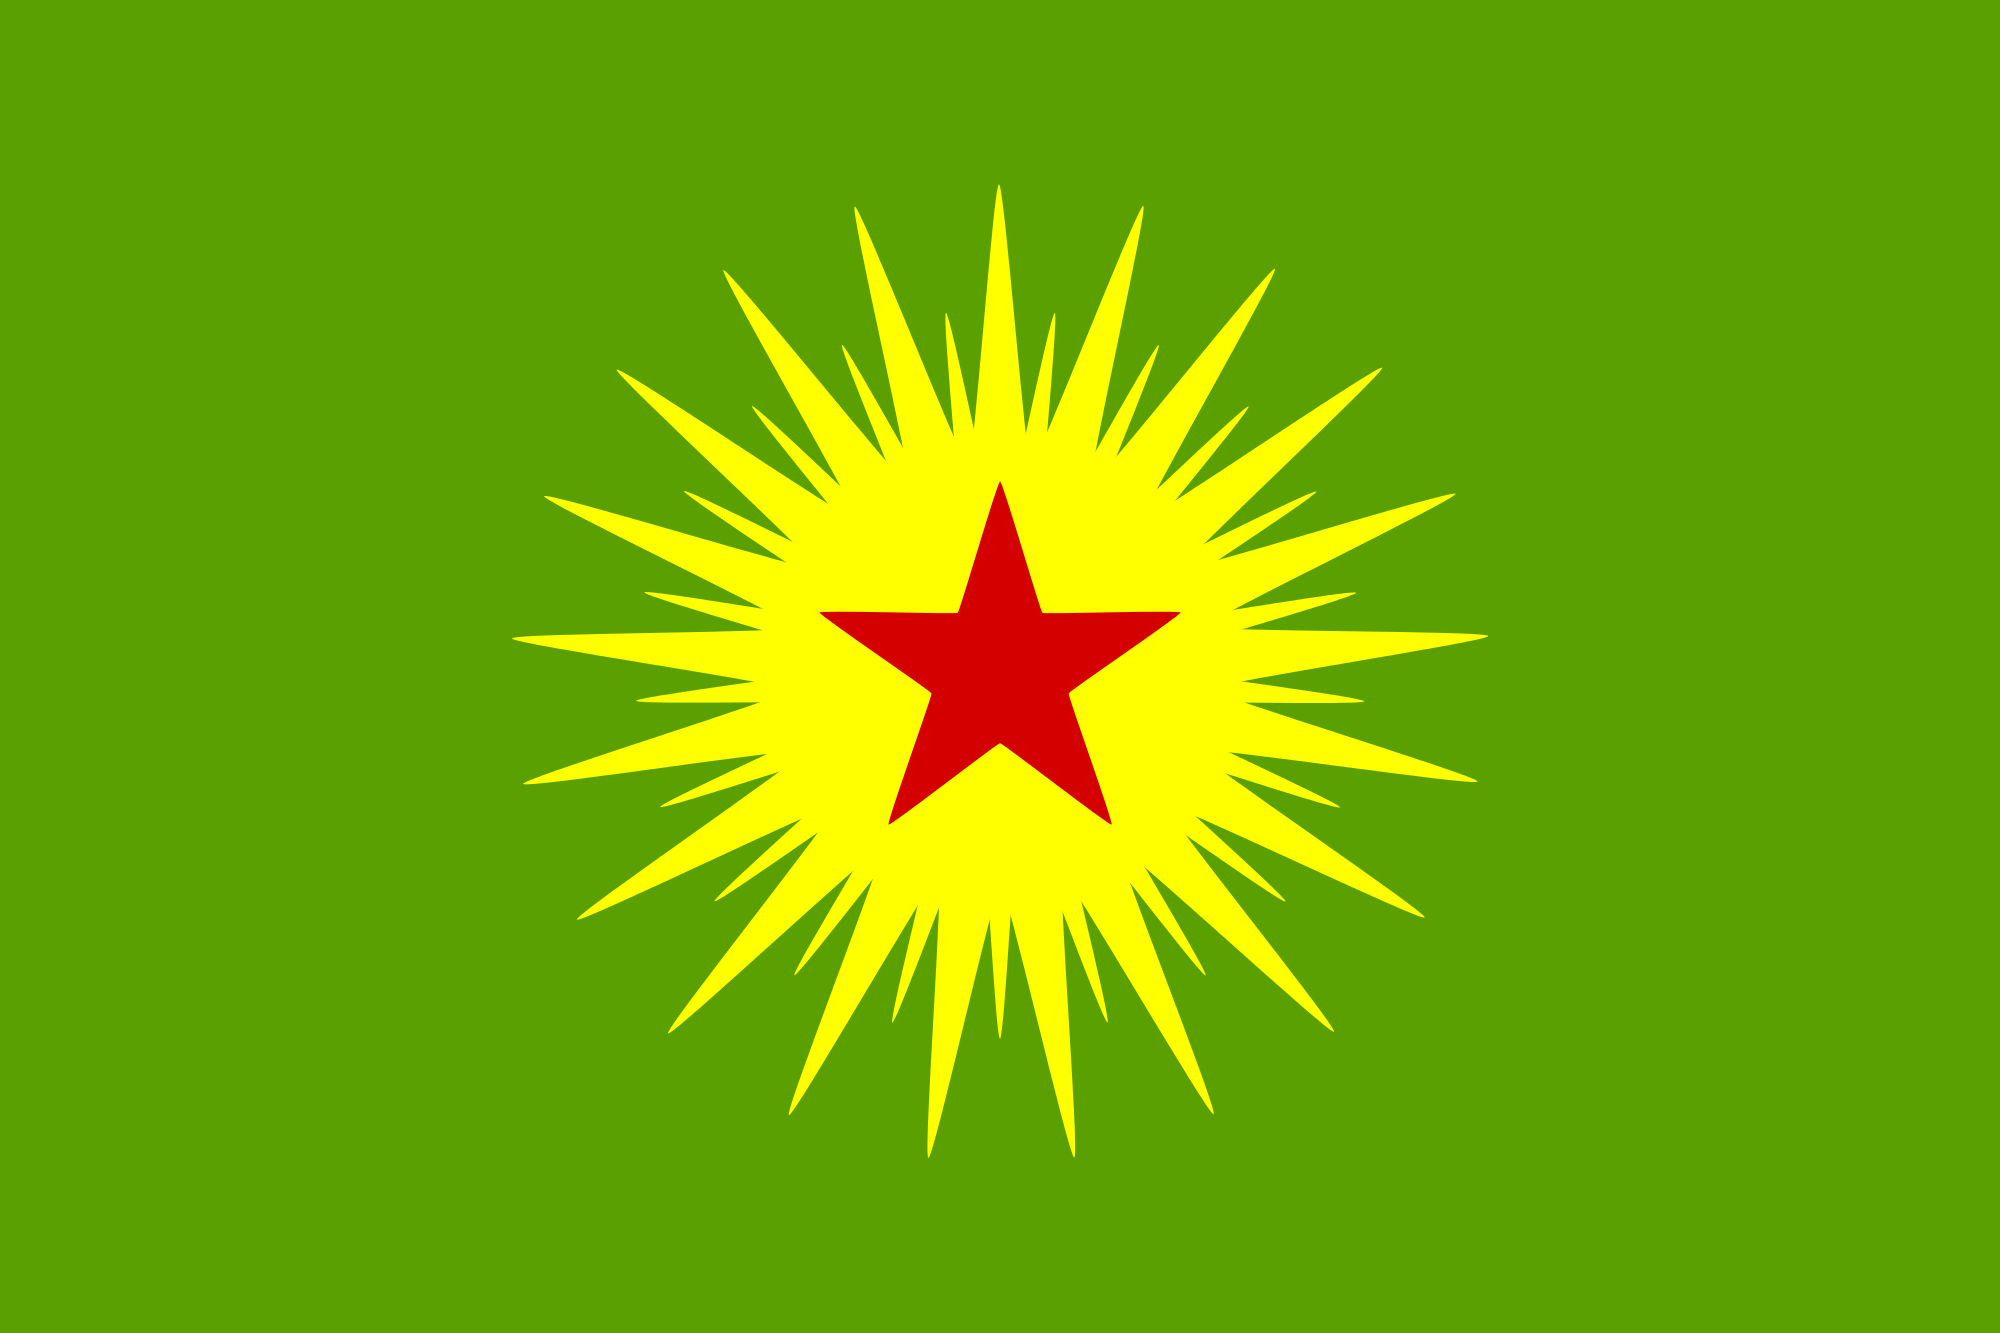 KCK: Elci blev myrdet for at sige: “PKK er ikke en terrororganisation”